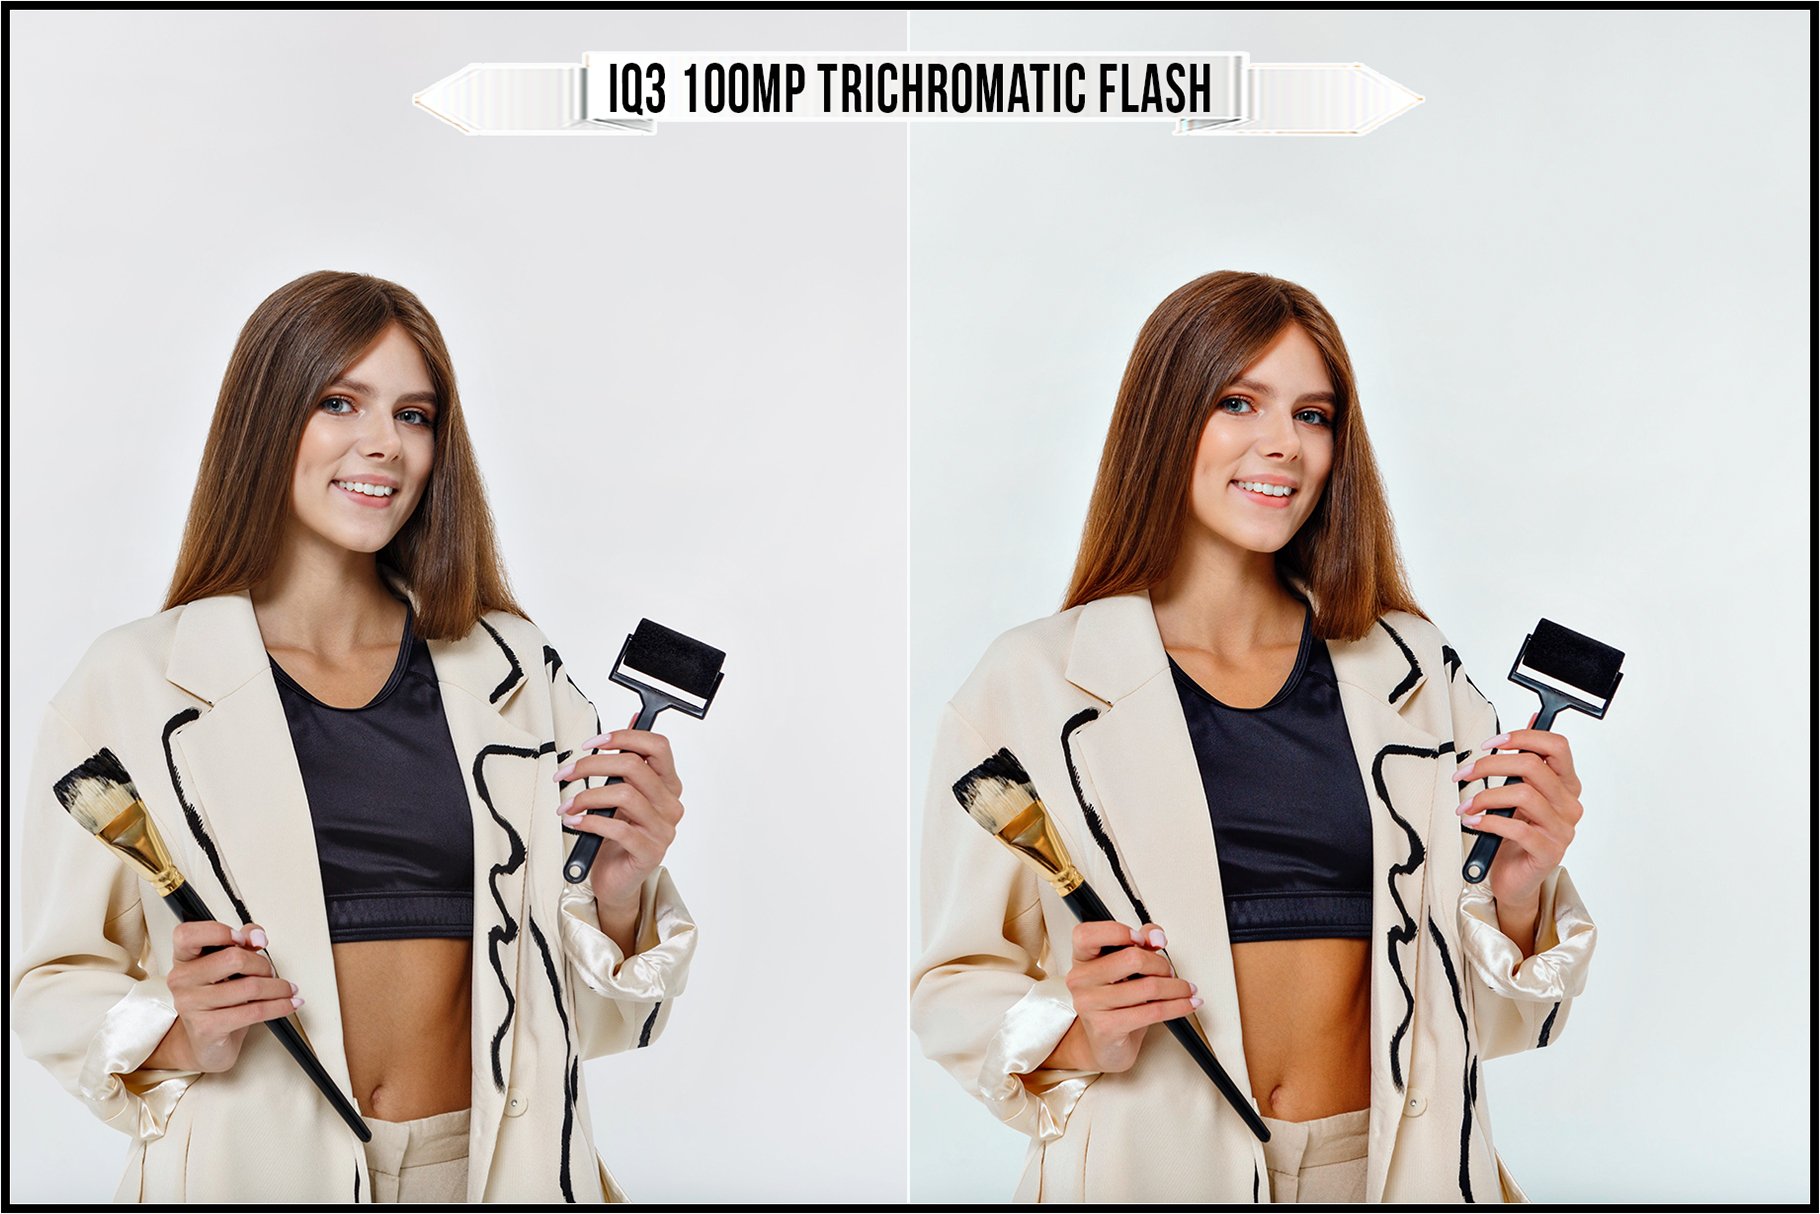 iq3 100mp trichromatic flash 676